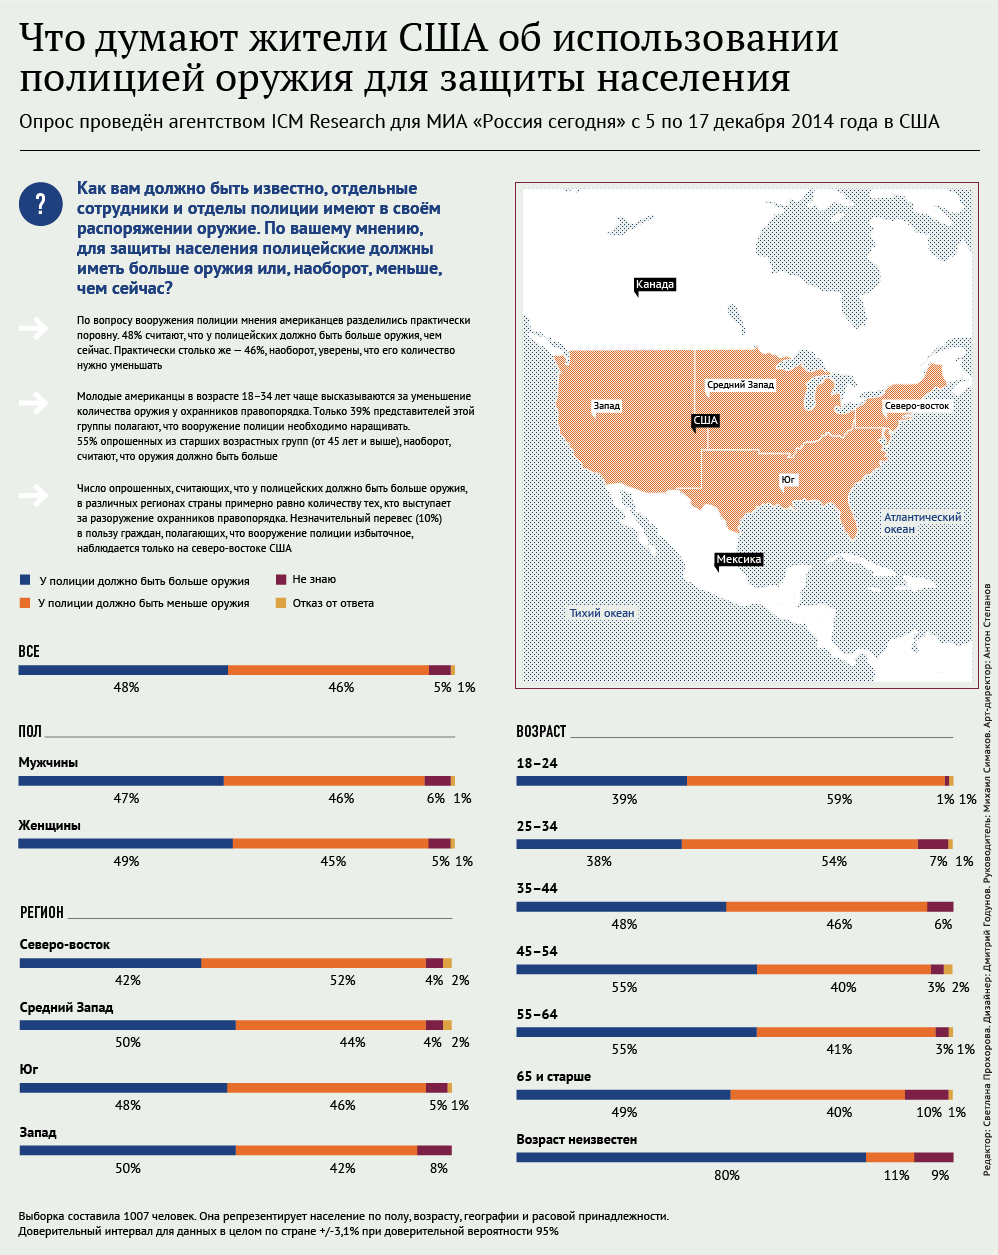 Что думают жители США об использованииполицией оружия для защиты населения. Инфографика